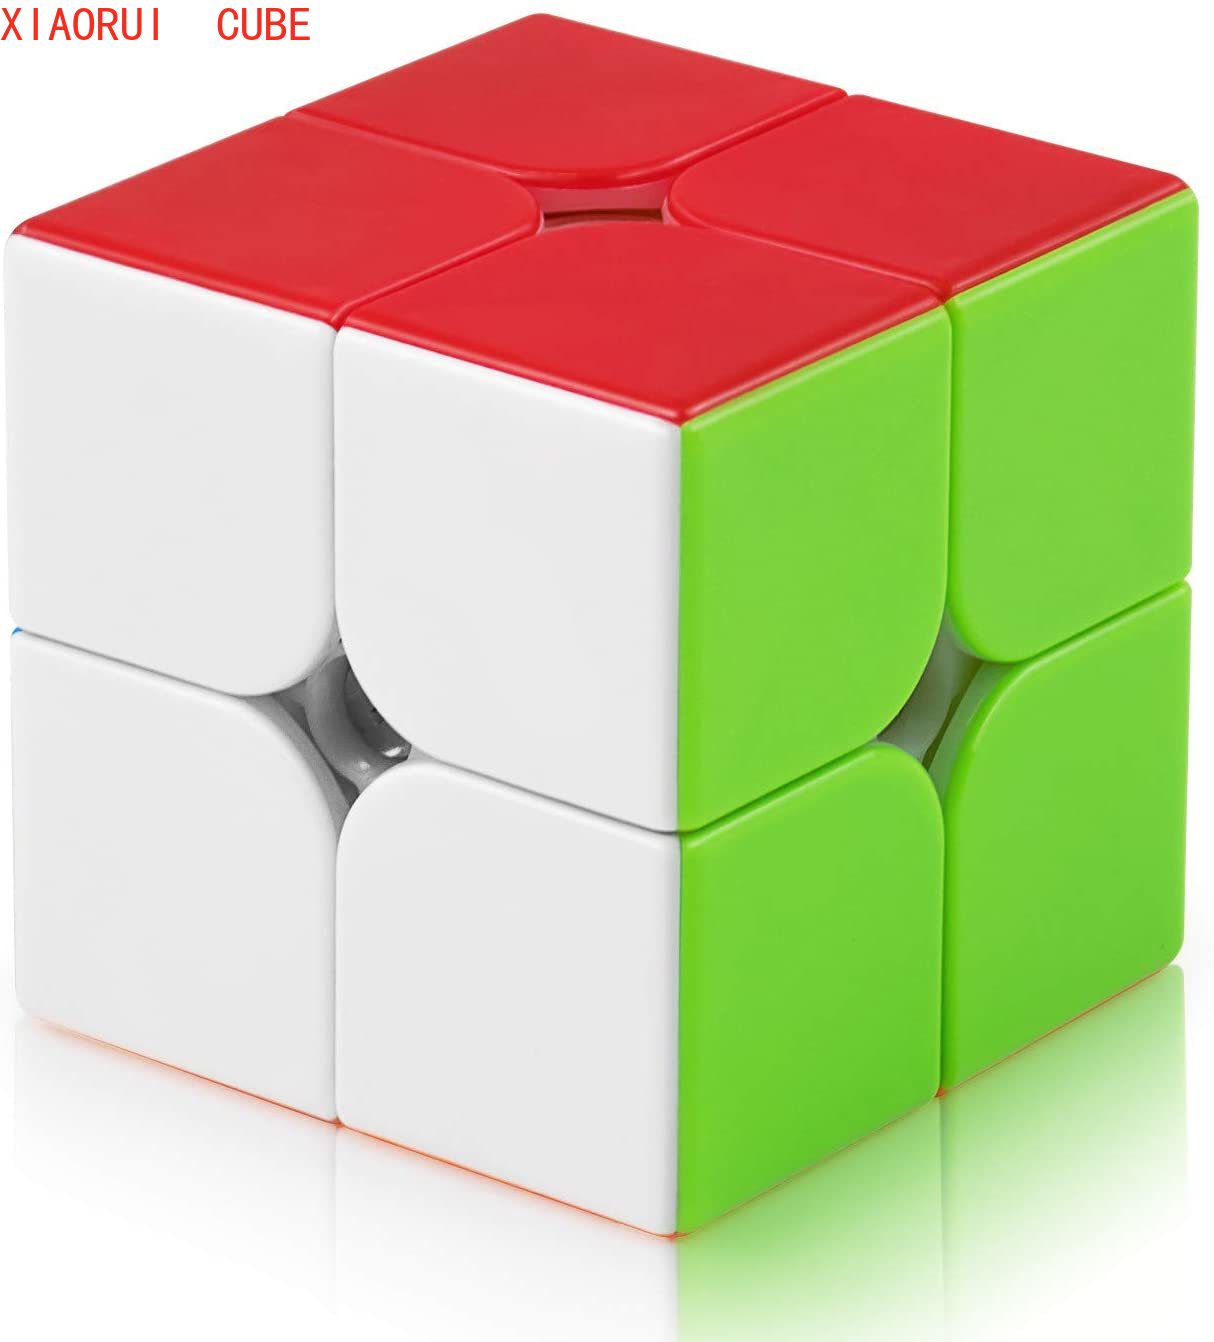 QIYI Khối Rubik 2x2 X 2x2 Chuyên Dụng